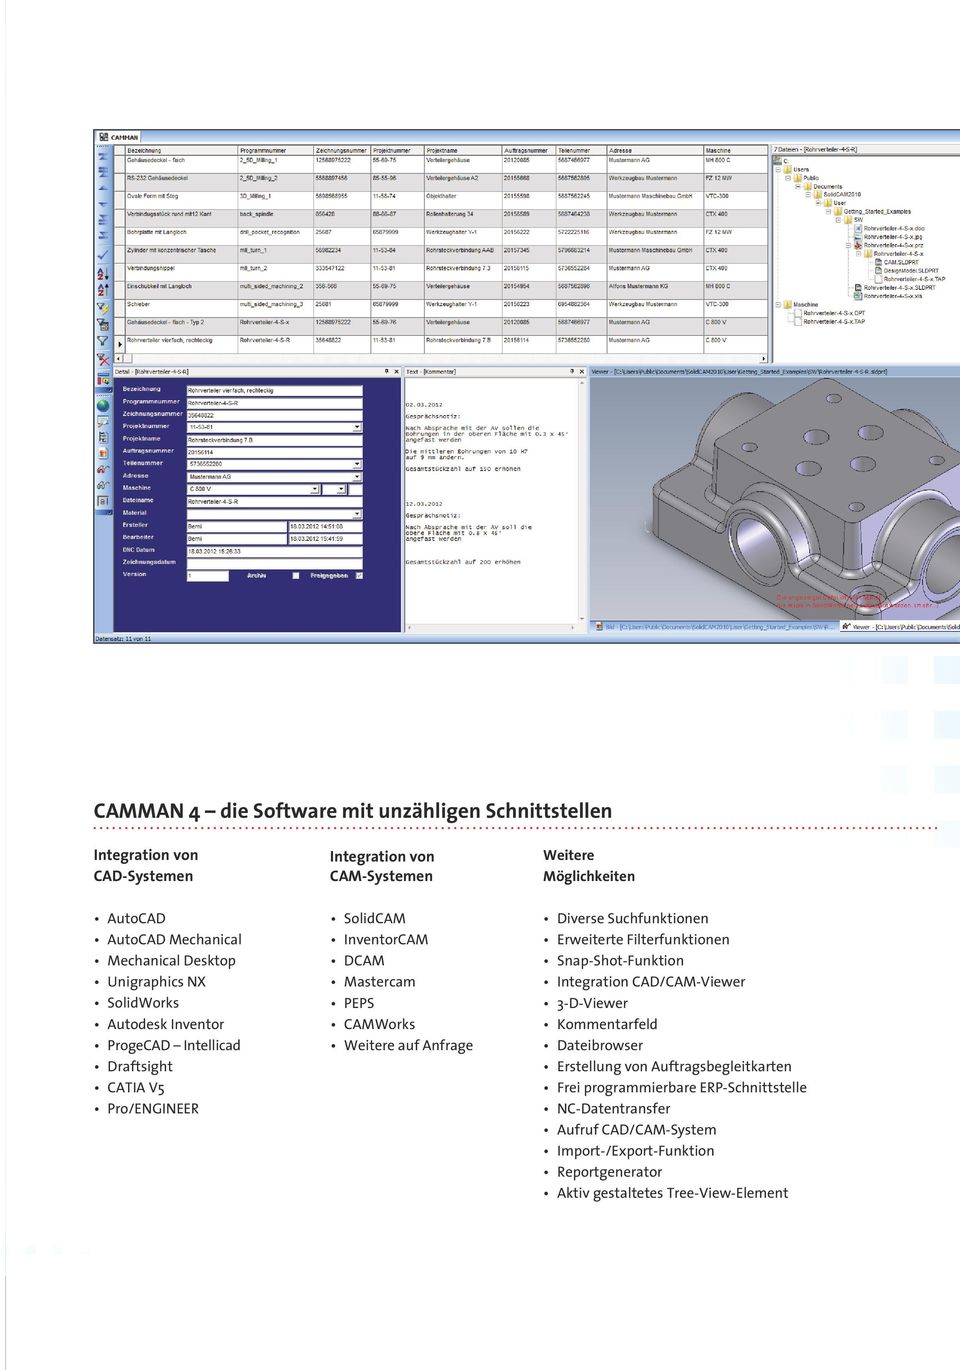 CAMWorks Weitere auf Anfrage Diverse Suchfunktionen Erweiterte Filterfunktionen Snap-Shot-Funktion Integration CAD/CAM-Viewer 3-D-Viewer Kommentarfeld